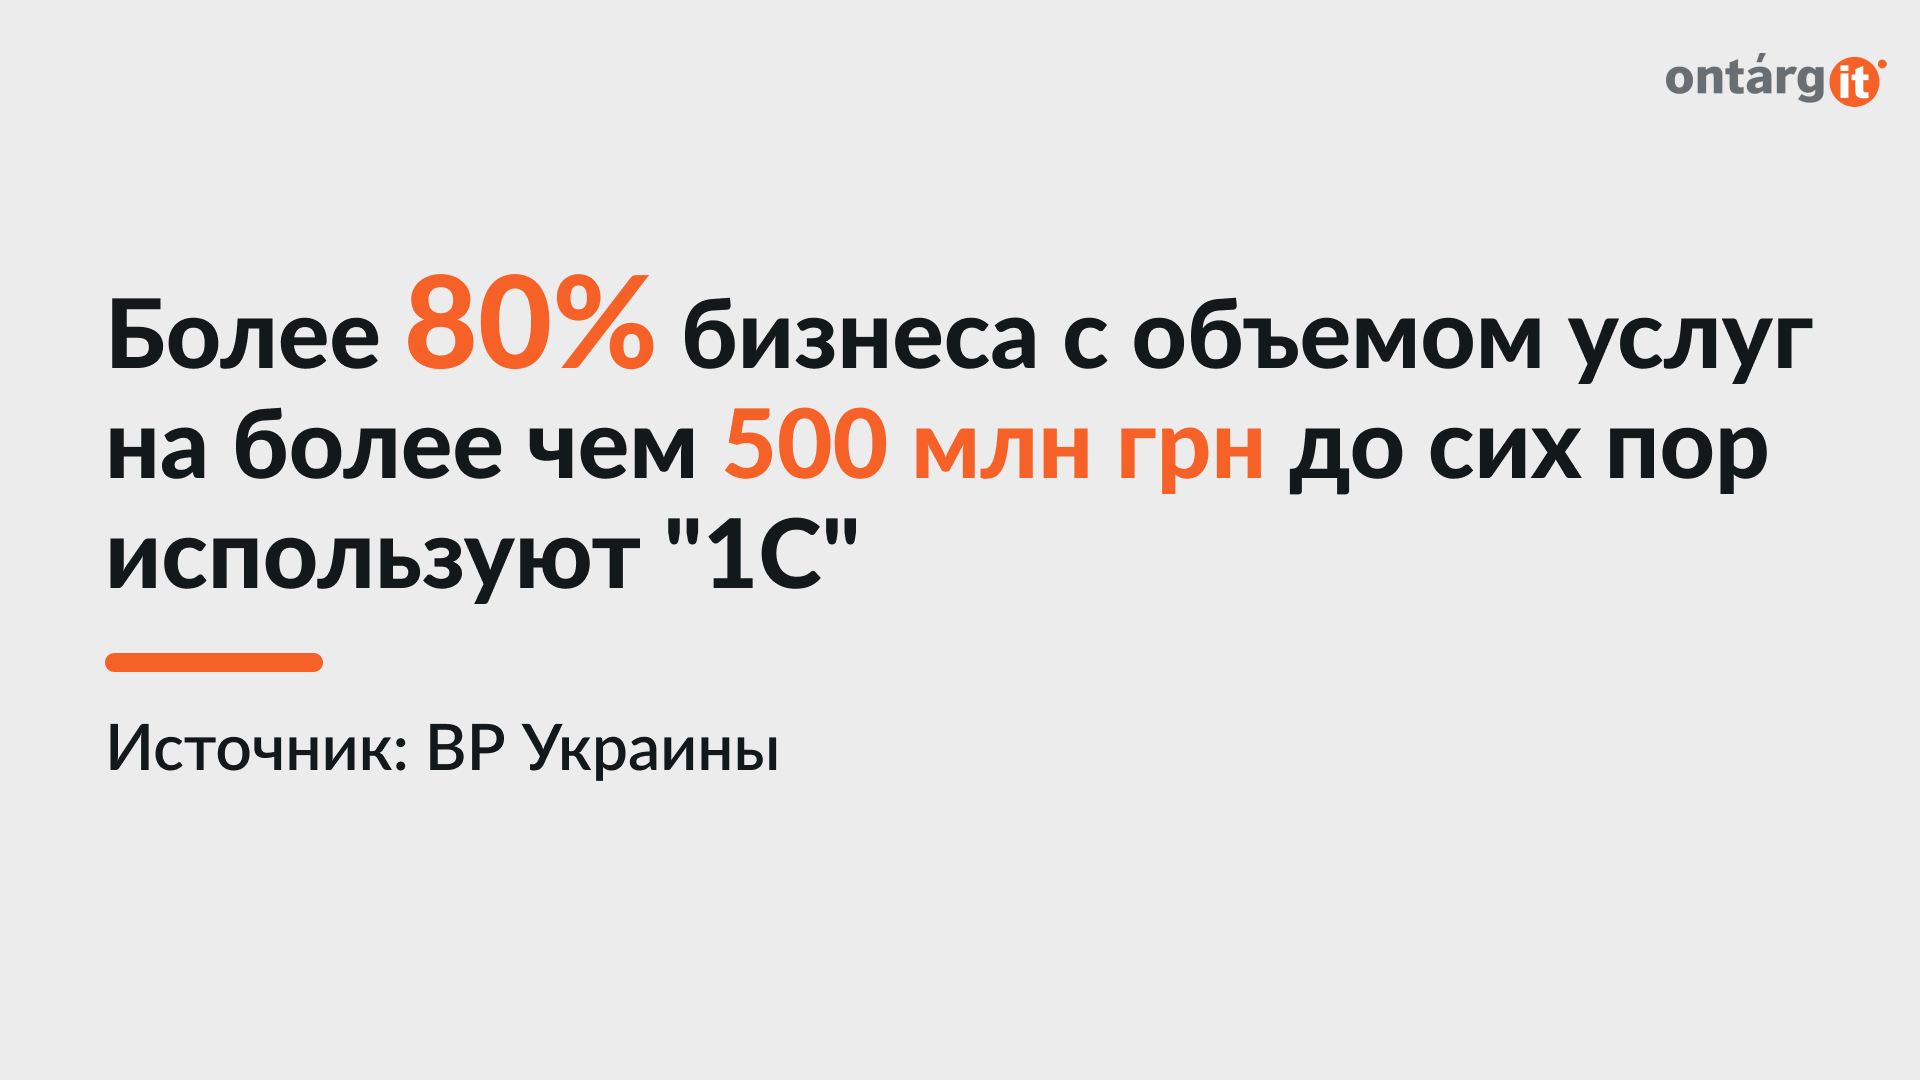 Более 80% бизнеса с объемом услуг на более чем 500 млн грн до сих пор используют "1С"